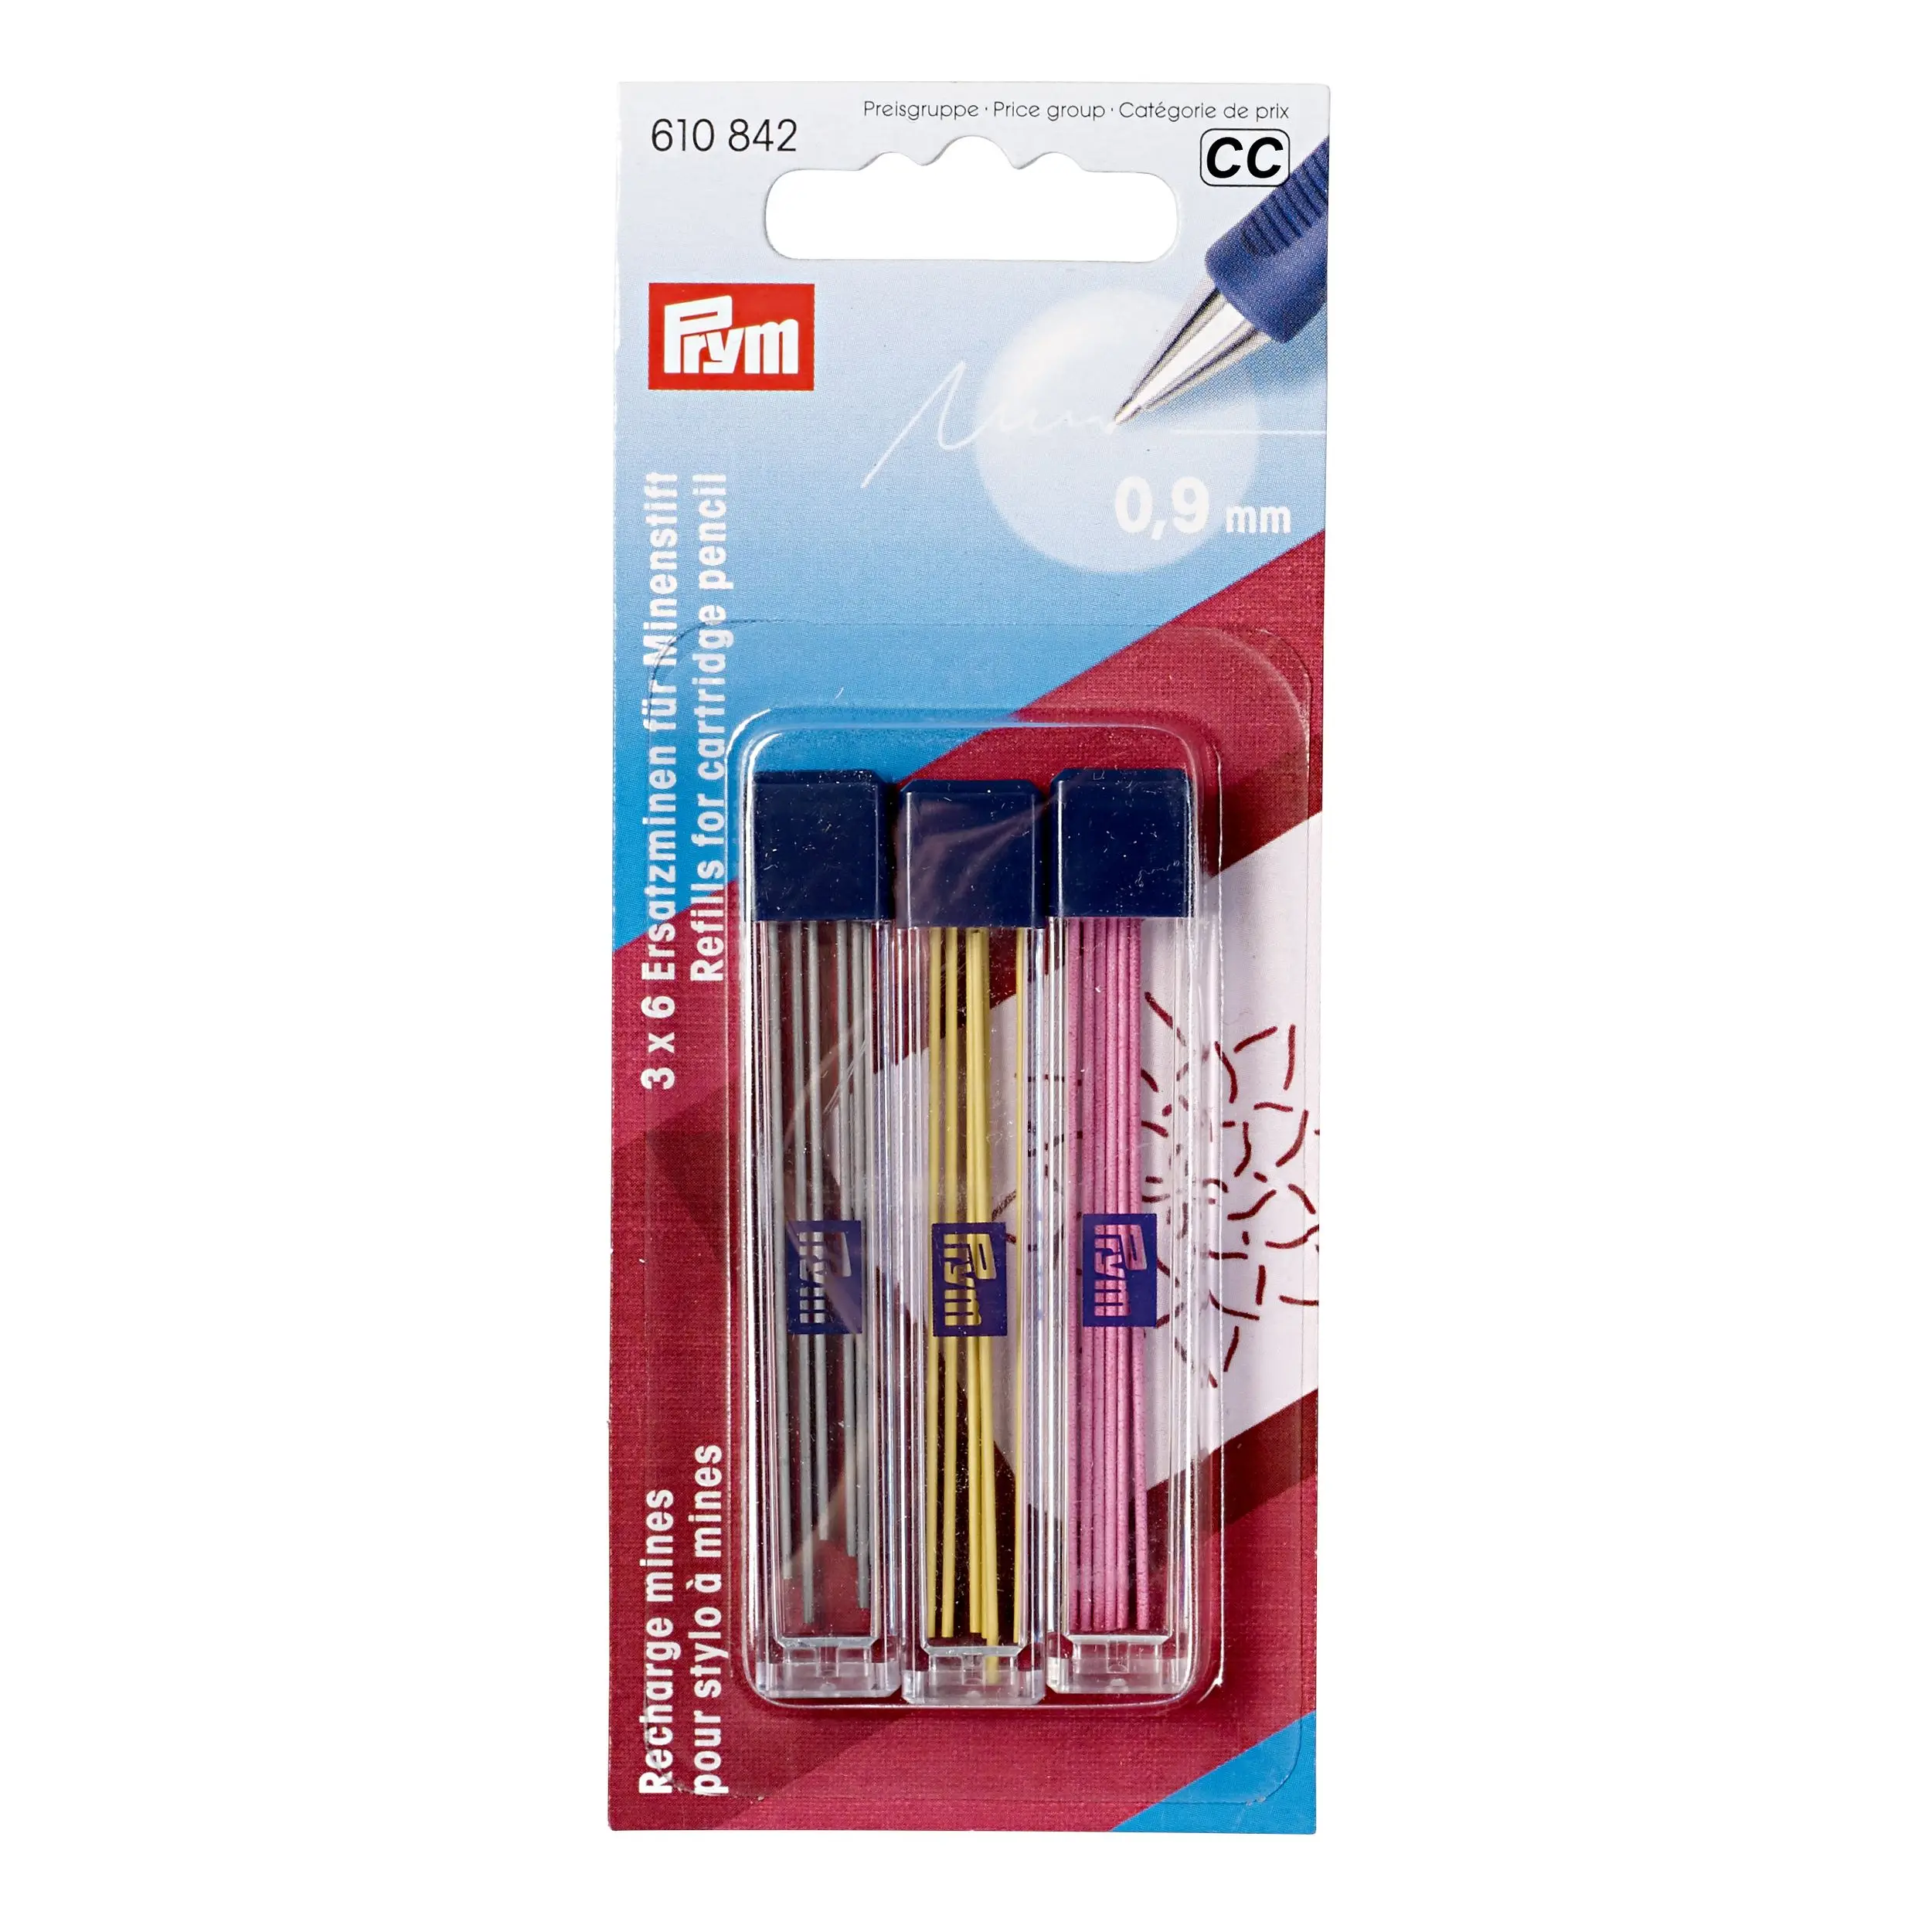 Prym любовь для заправки зажигалок для картридж карандаш 610842 3 вида цветов